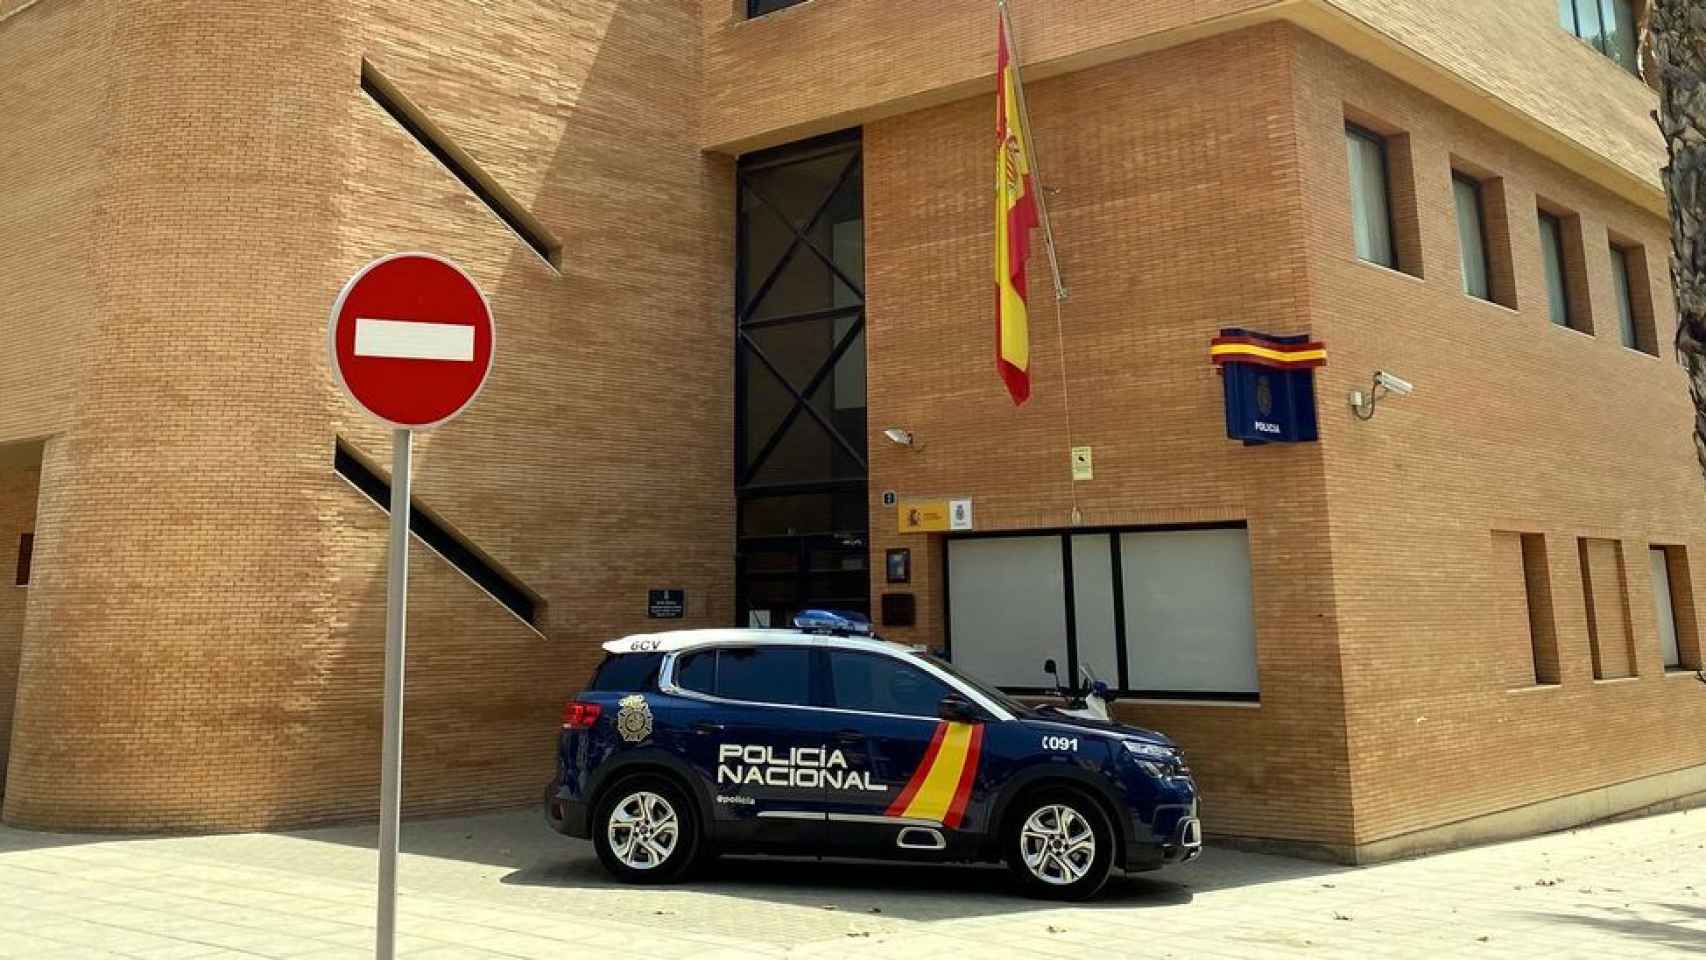 Comisaría de Policía Nacional de la zona norte de Alicante.